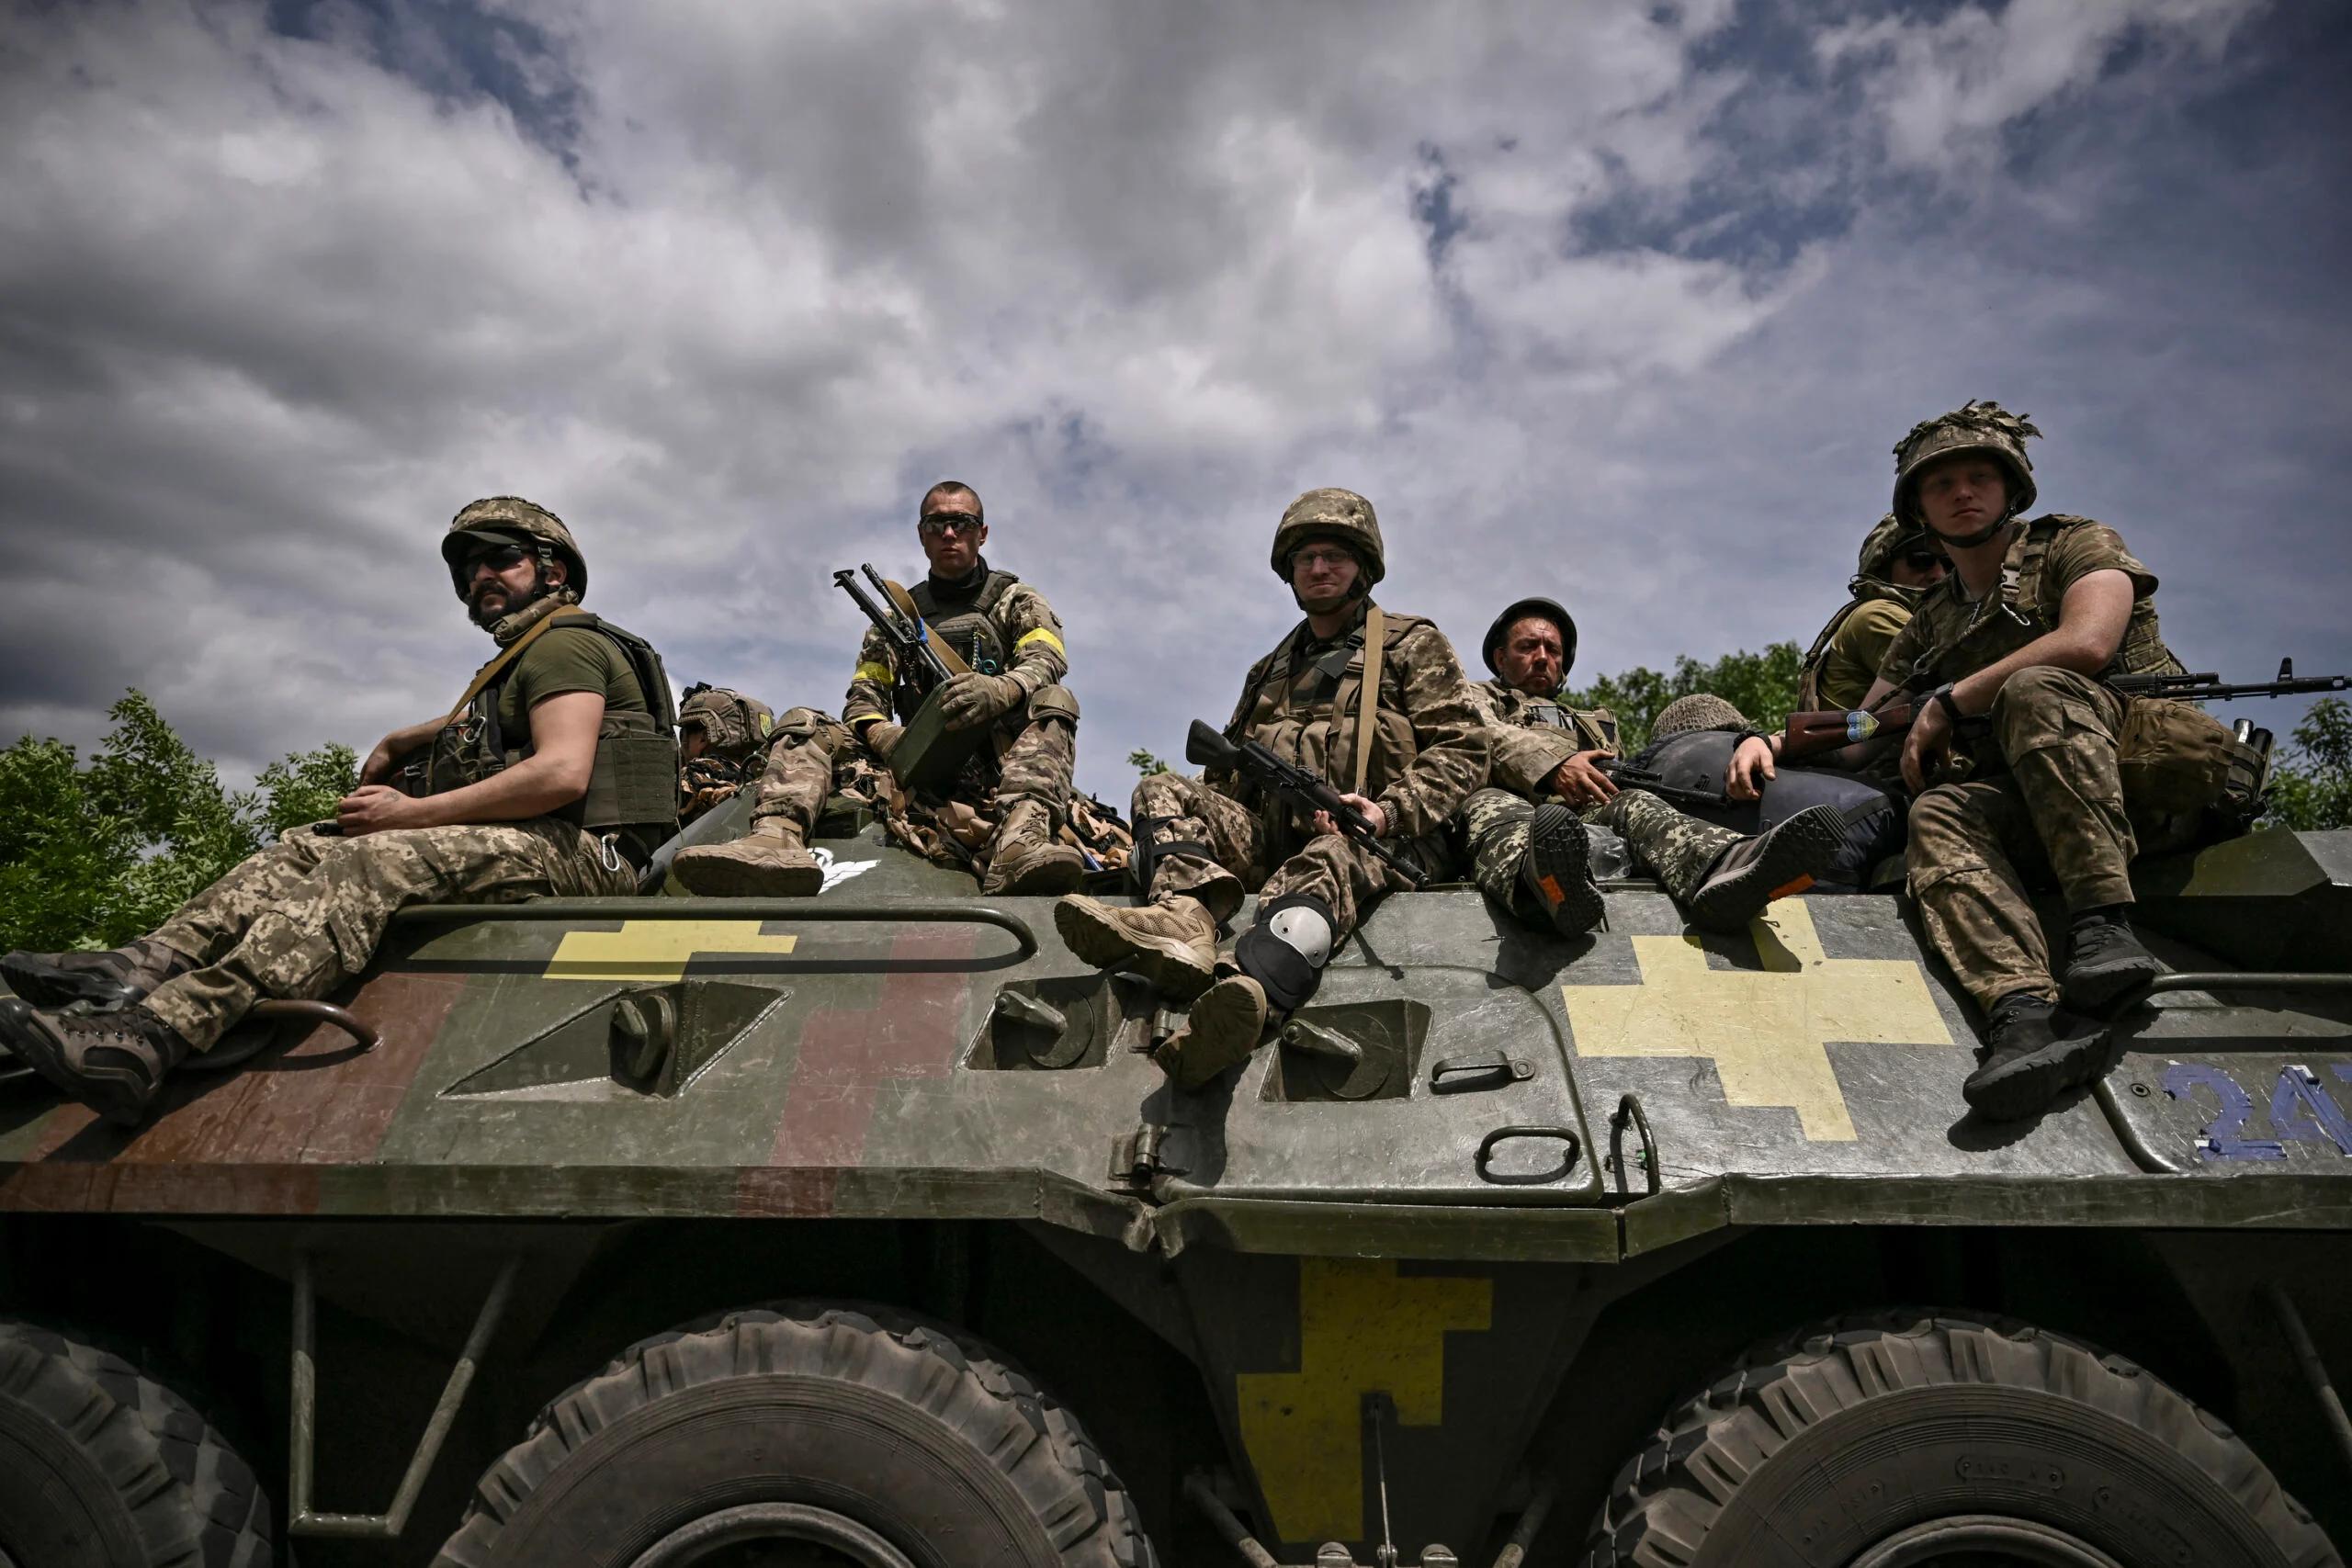 Żołnierze z żółtymi opaskami siedzą na wozie bojowym